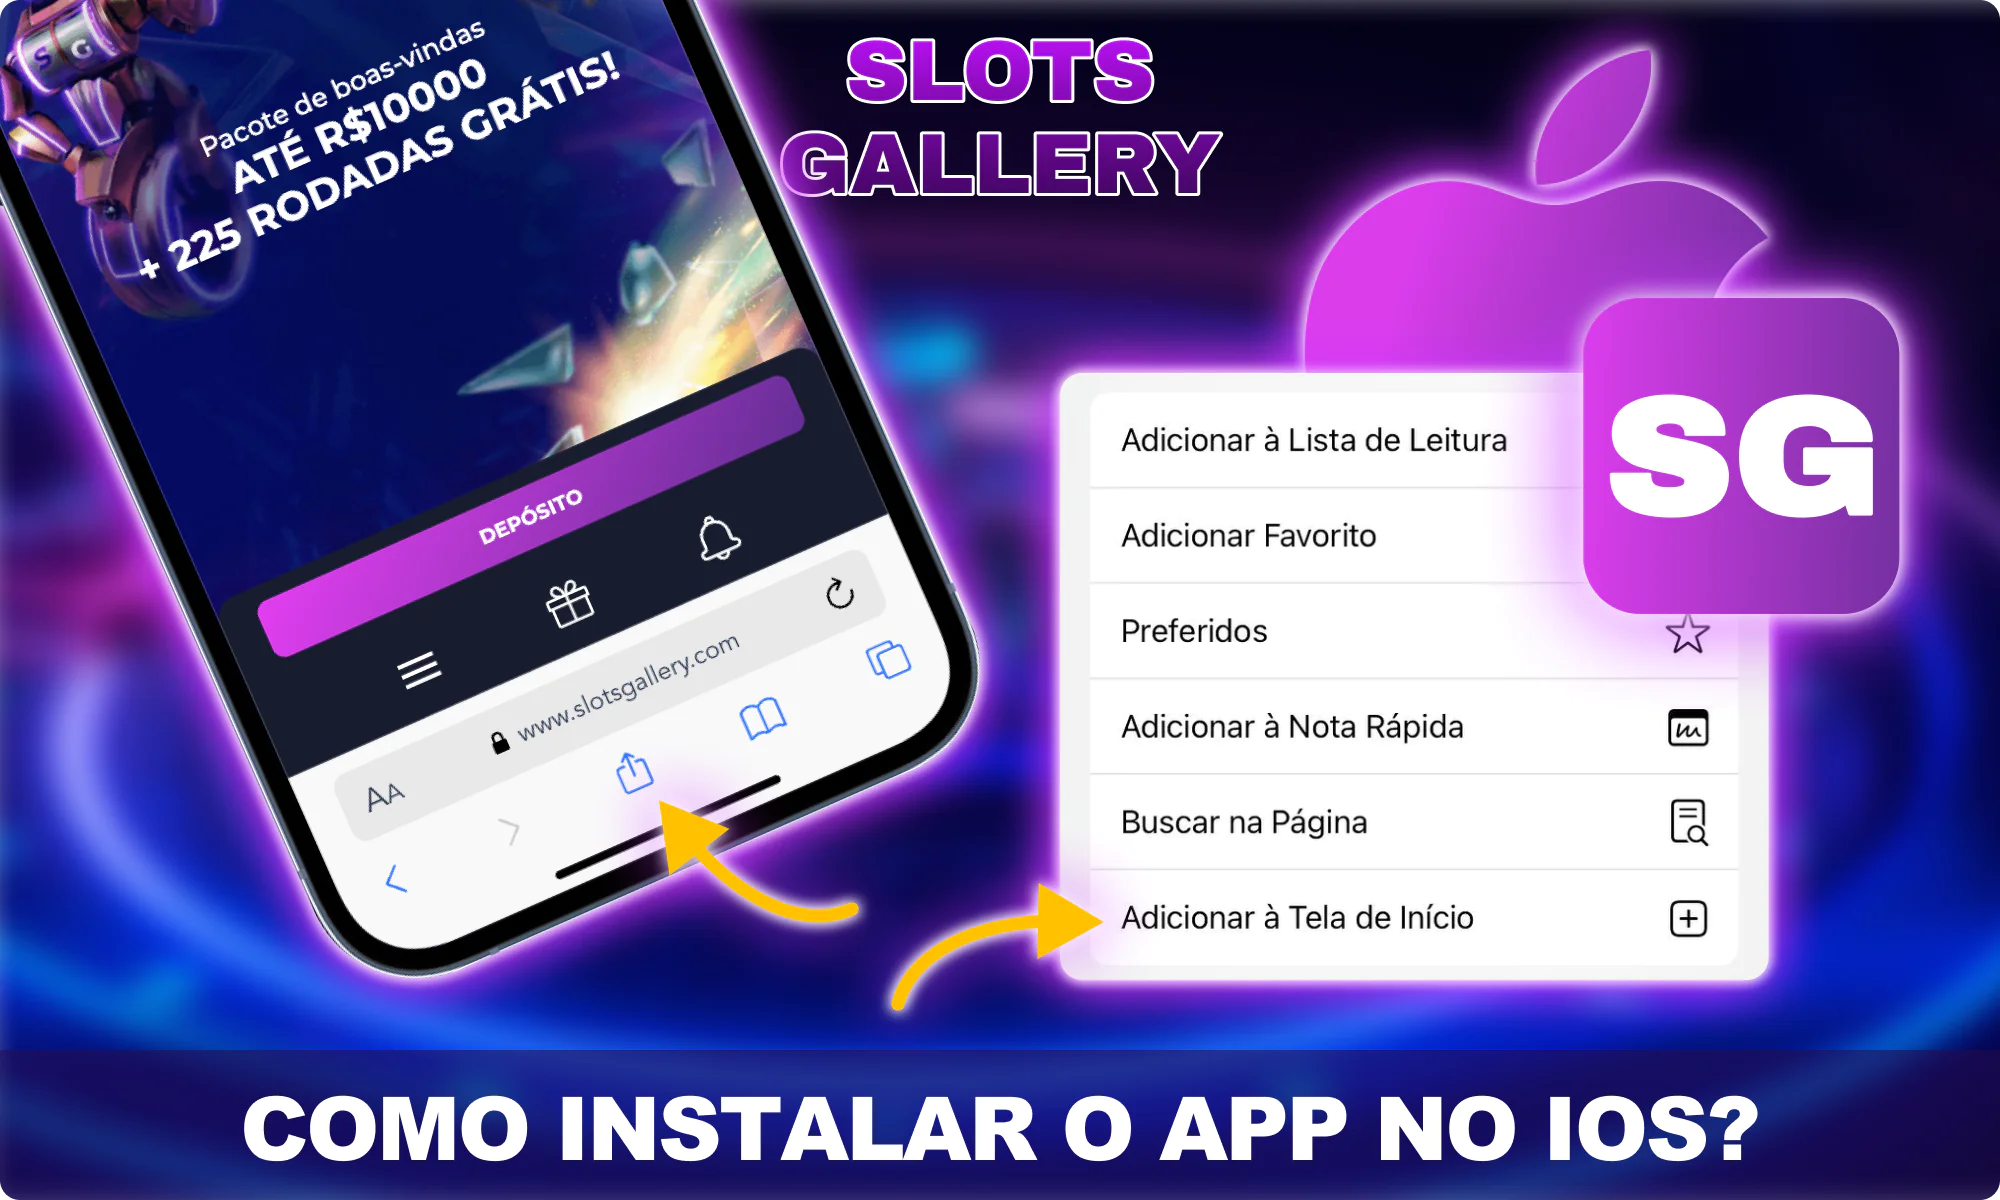 Instruções para instalar o aplicativo no iOS - Slots Gallery